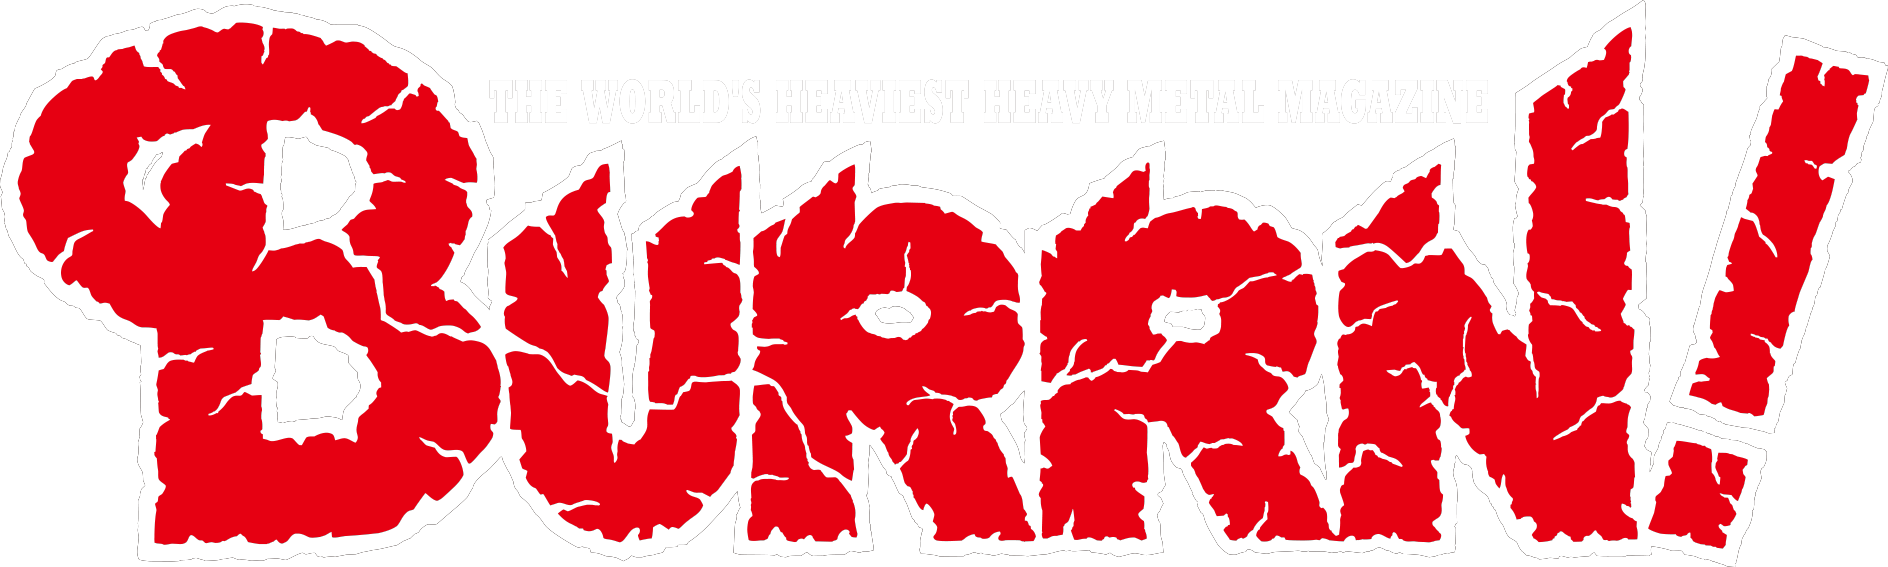 世界最大の実売部数を誇るヘヴィ・メタル / ハード・ロック専門誌BURRN!特集ページ｜セブンネットショッピング